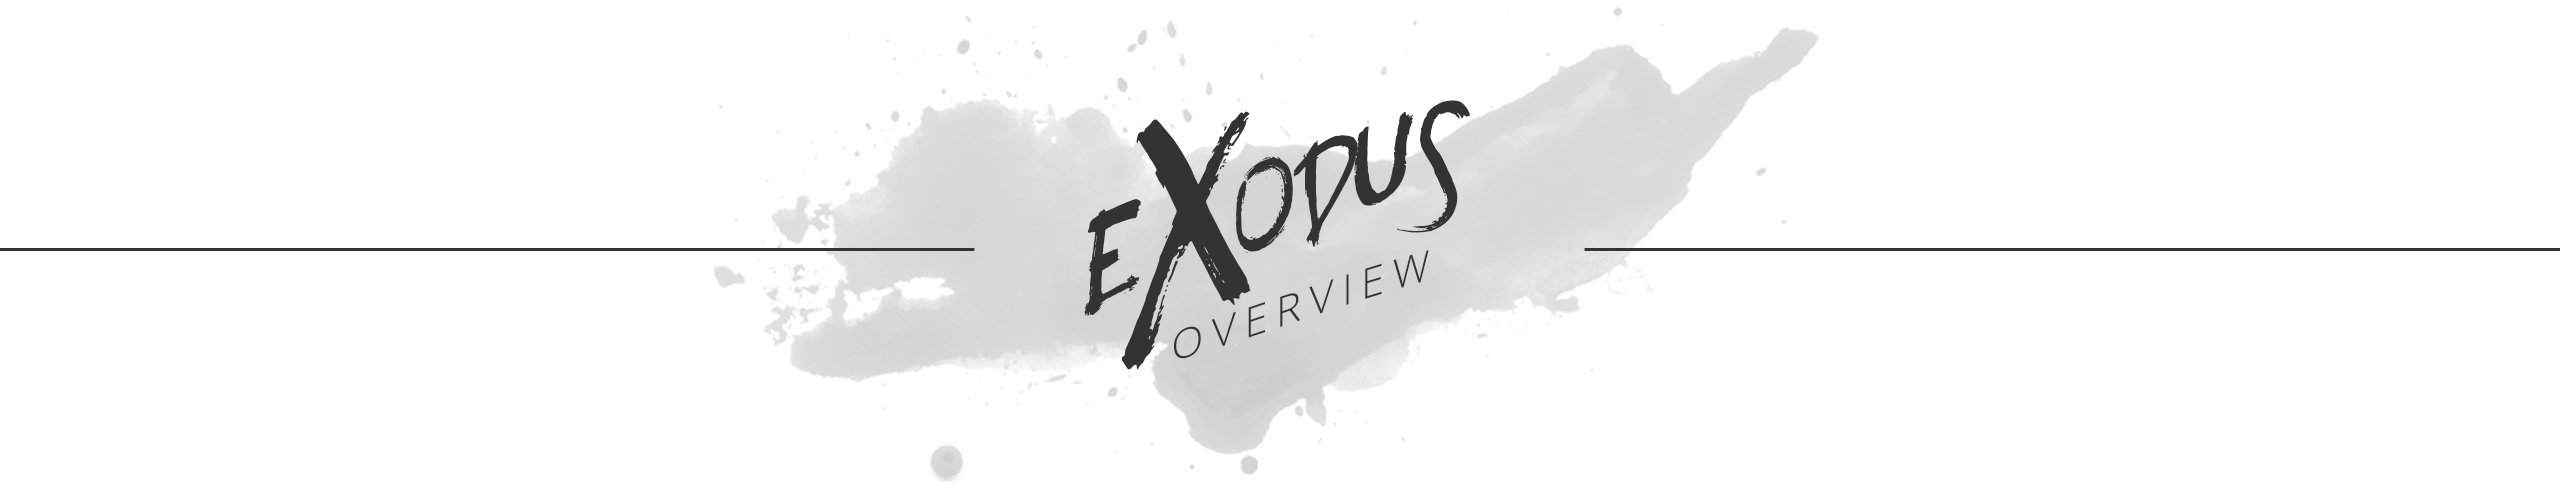 exodus-ov-h1